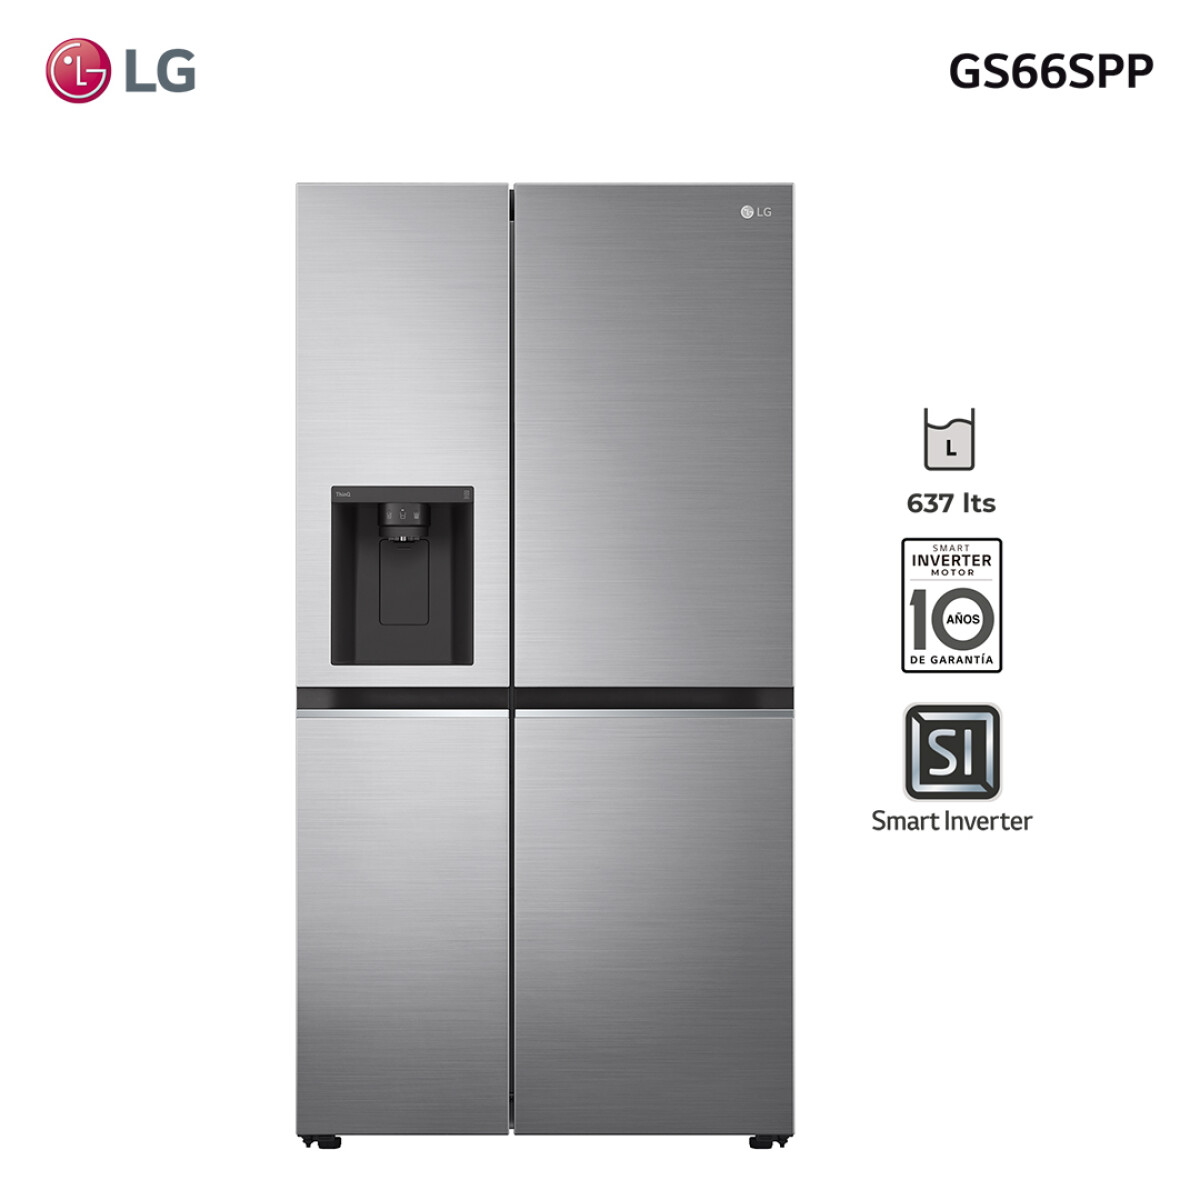 Refrigerador LG inverter 637L GS66SPP - 001 